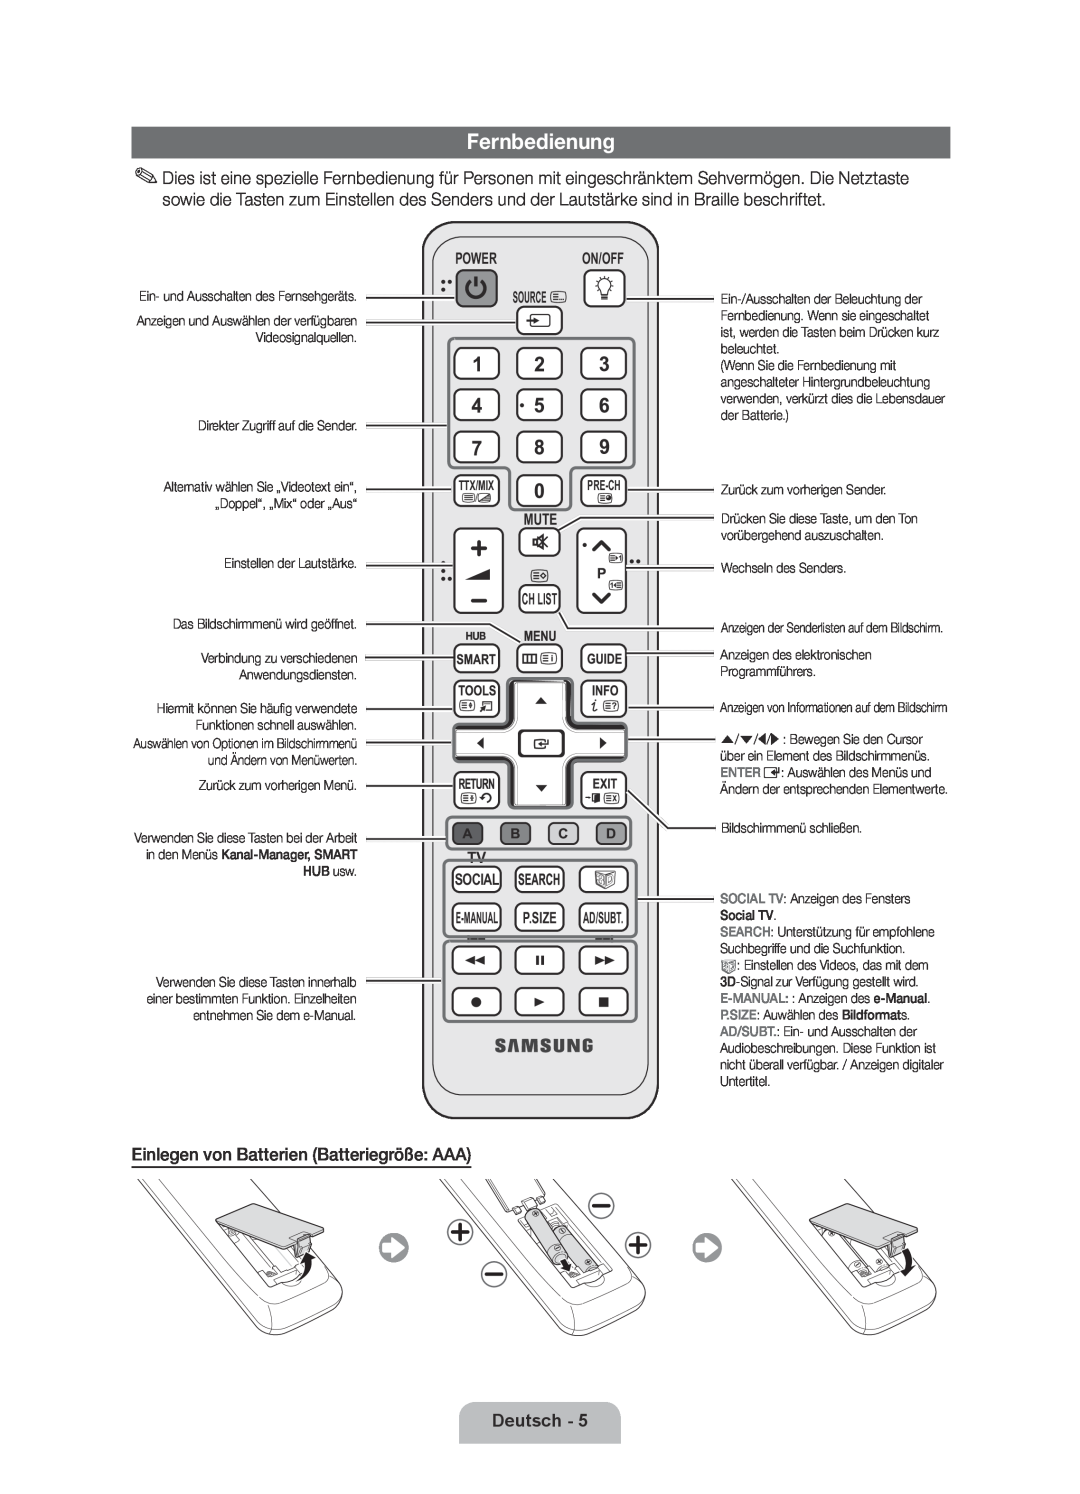 Samsung UE46D6530WSXXN manual Fernbedienung, Einlegen von Batterien Batteriegröße AAA, Deutsch, Power On/Off Source 